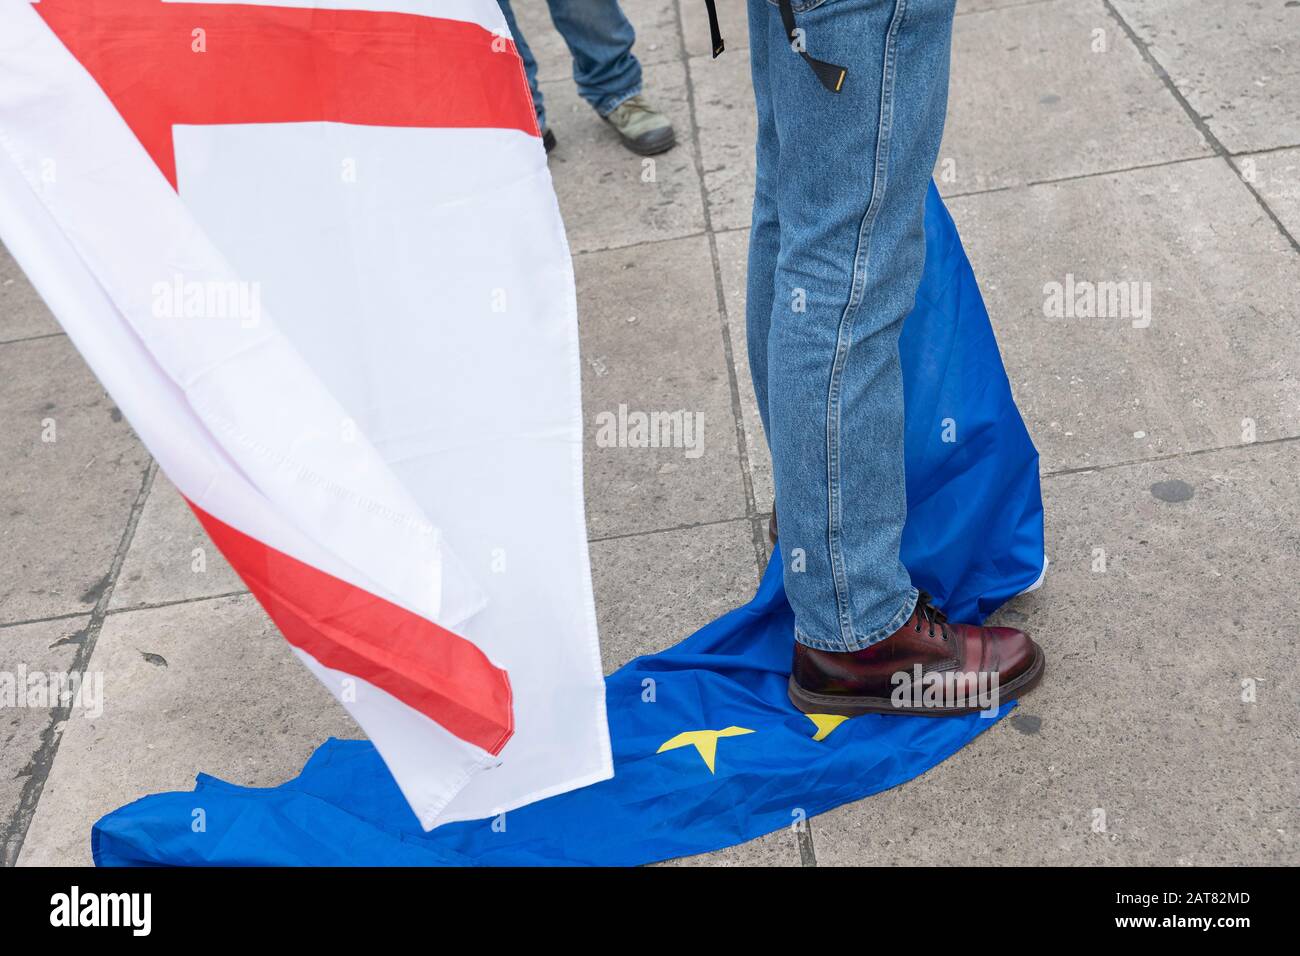 Londres, Royaume-Uni 31 janvier 2020. Un militant pro-Brexit se tenant sur un drapeau de l'Union européenne à la place du Parlement le jour où la Grande-Bretagne quitte officiellement l'UE Banque D'Images